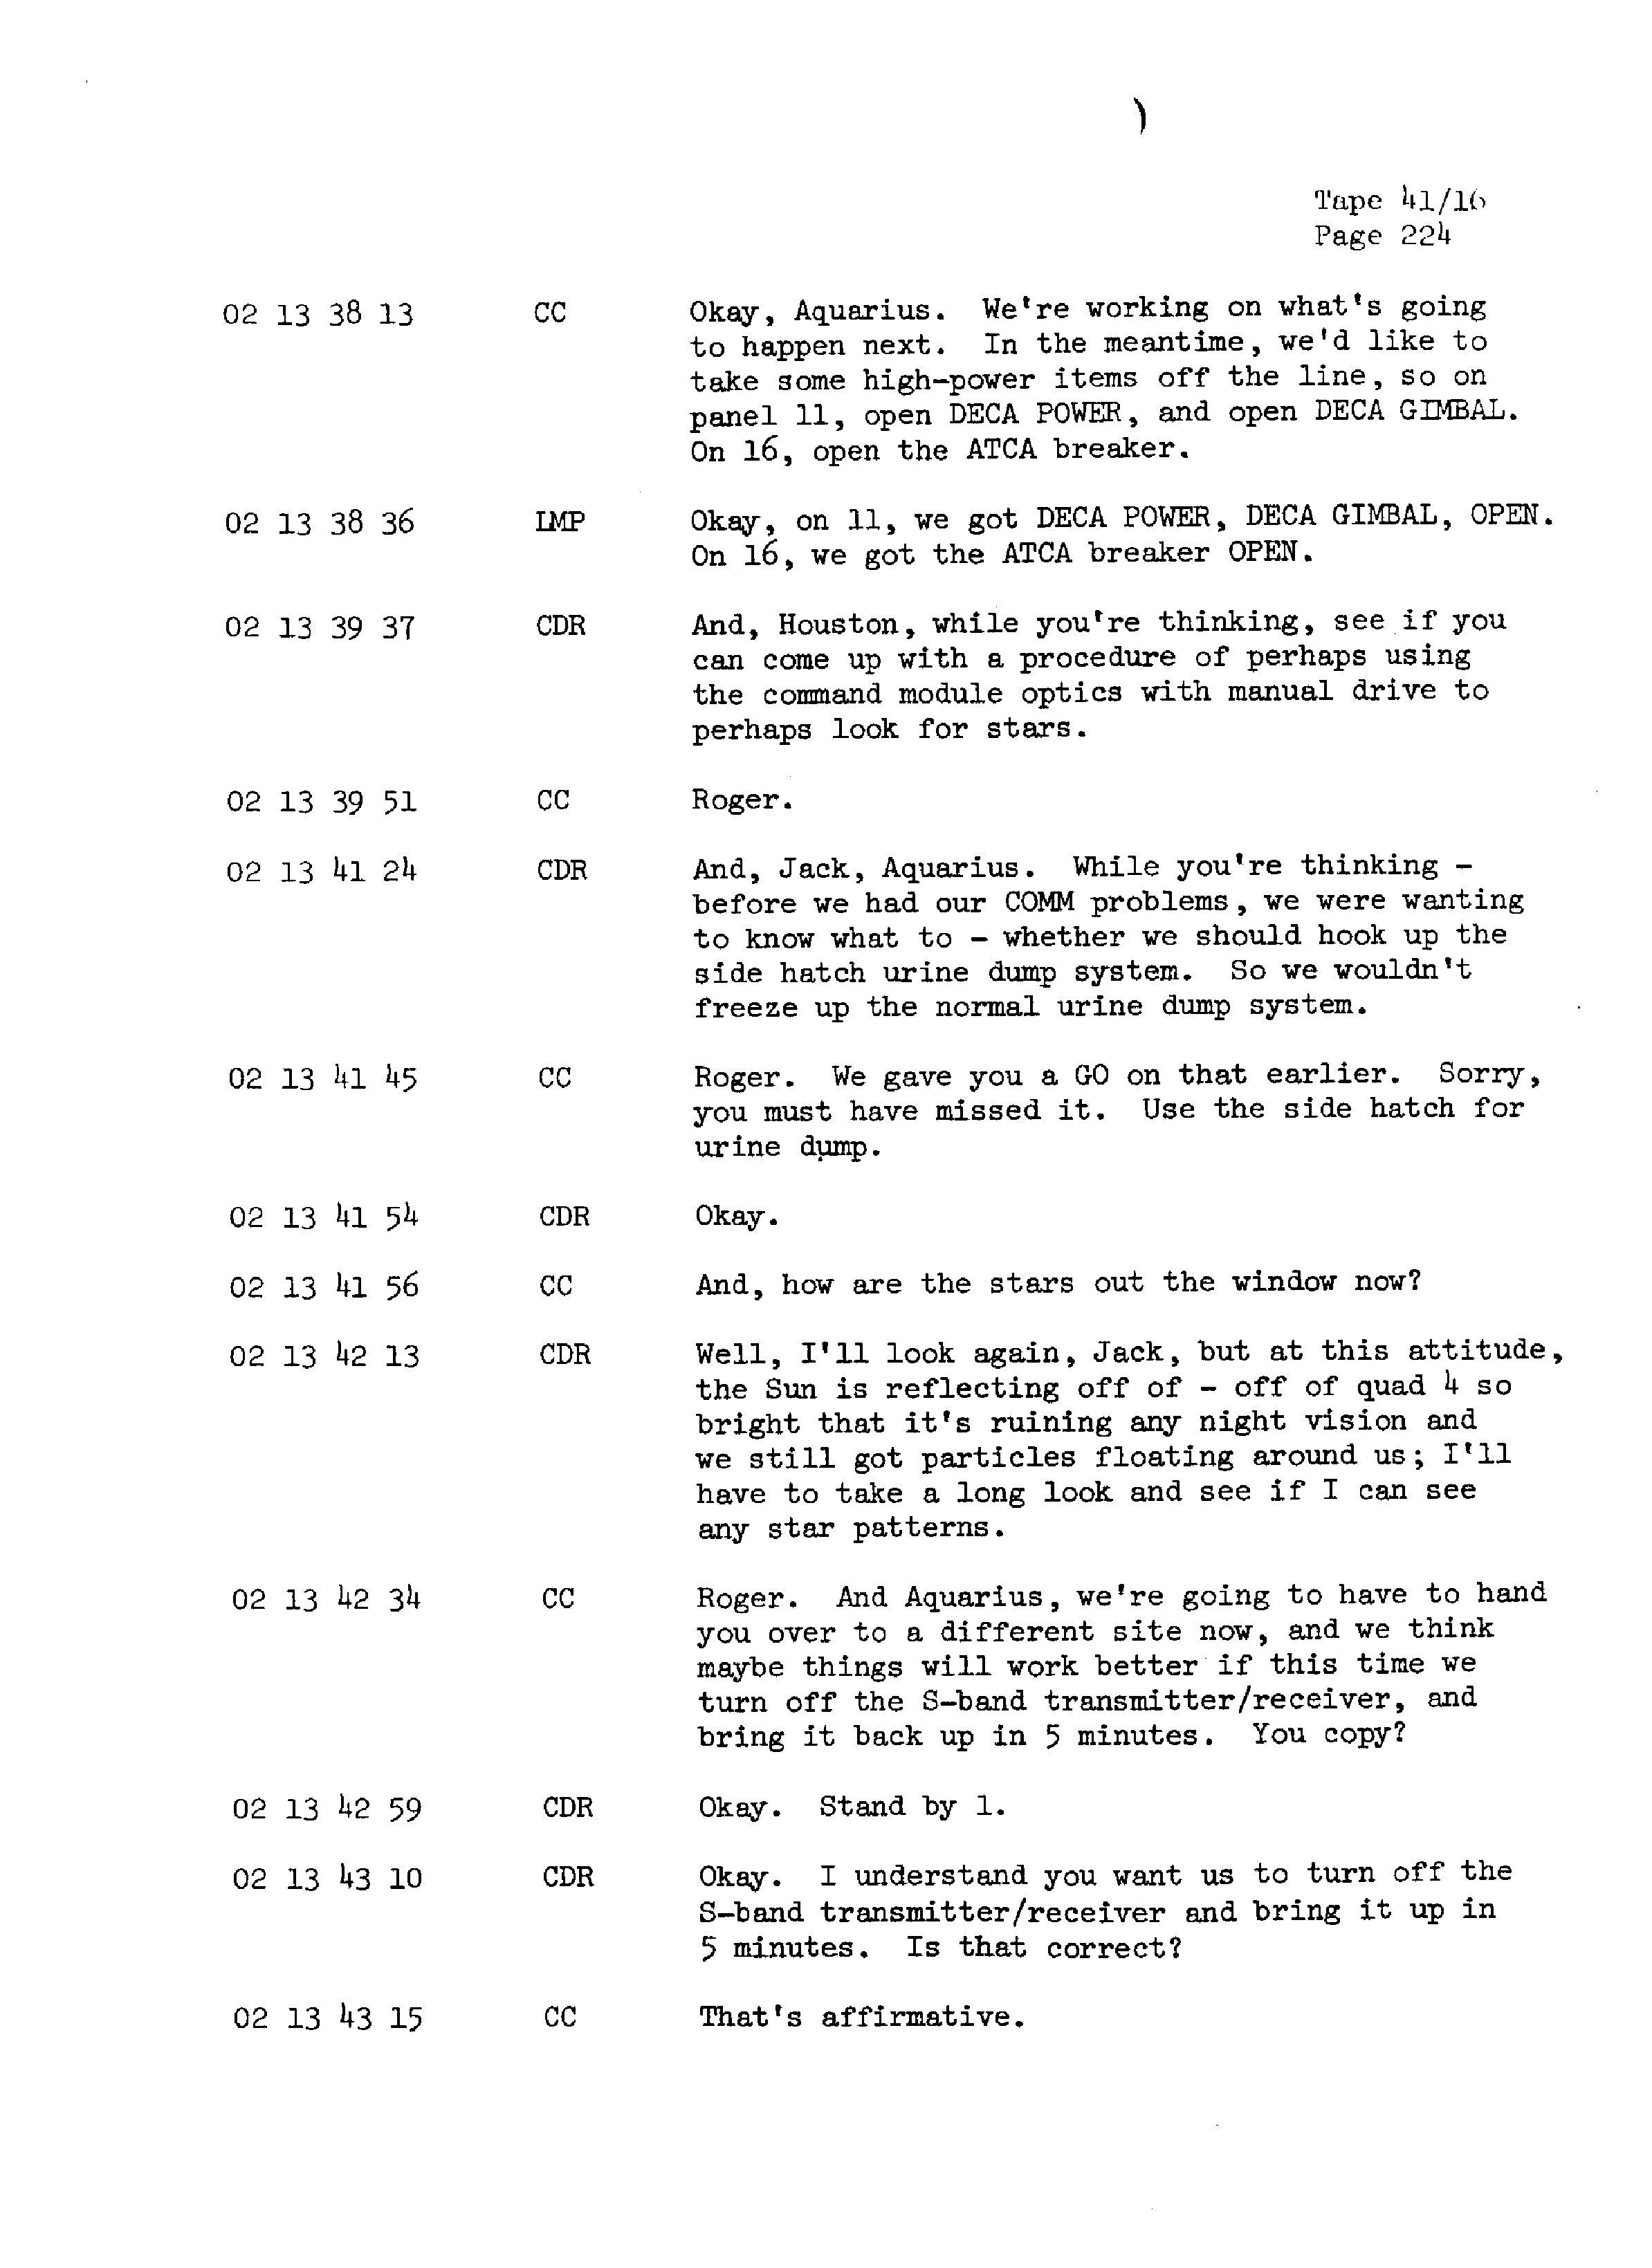 Page 231 of Apollo 13’s original transcript